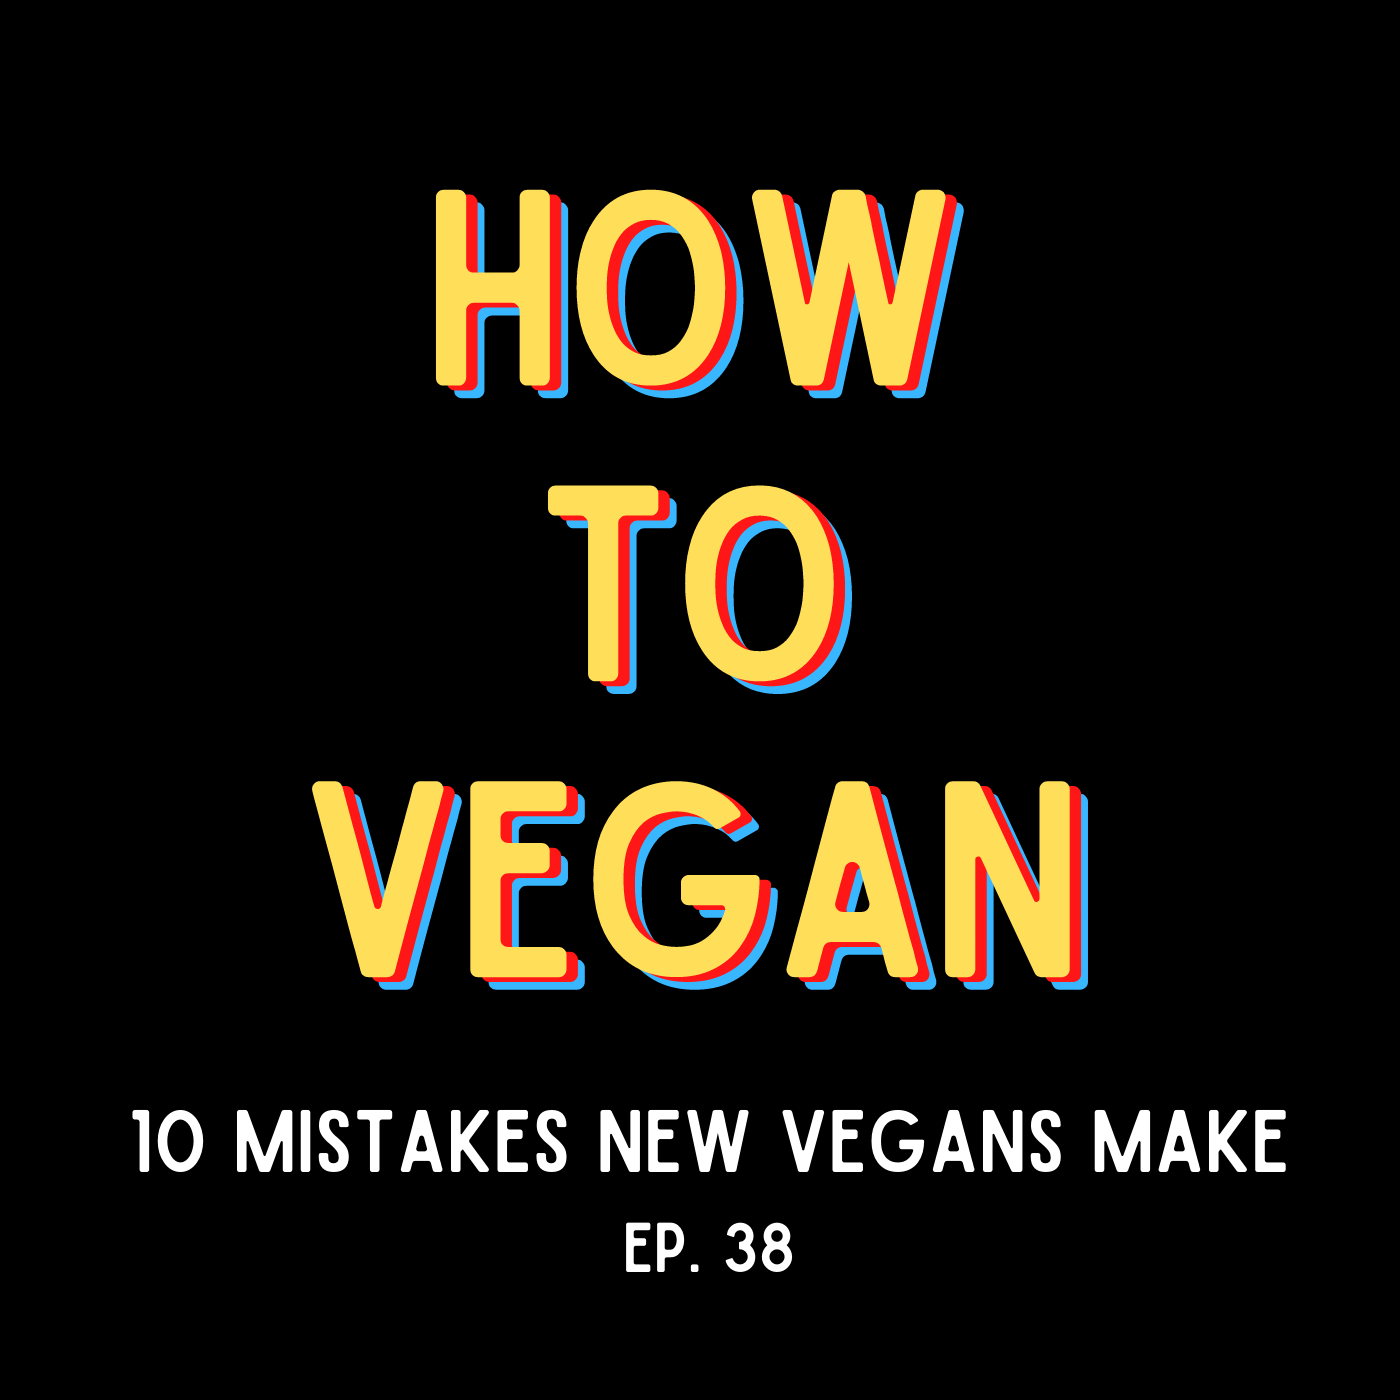 10 Mistakes New Vegans Make